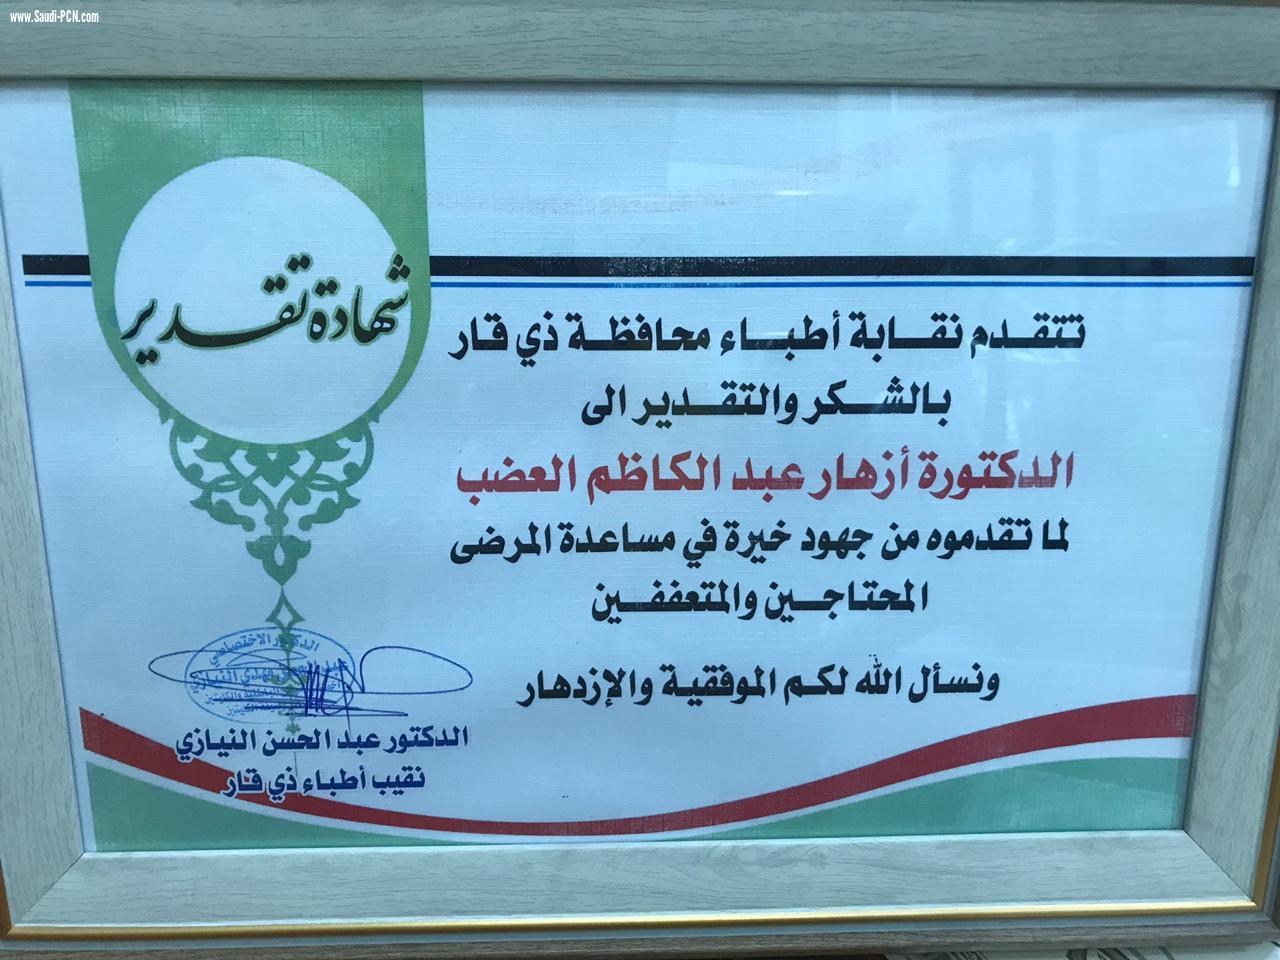 وزارة الصحة العراقيه و دائرة صحة ذي قار تمنح  تخويل الى د أزهار عبد الكاظم العضب بإجراء العمليات المنظارية رسمياً